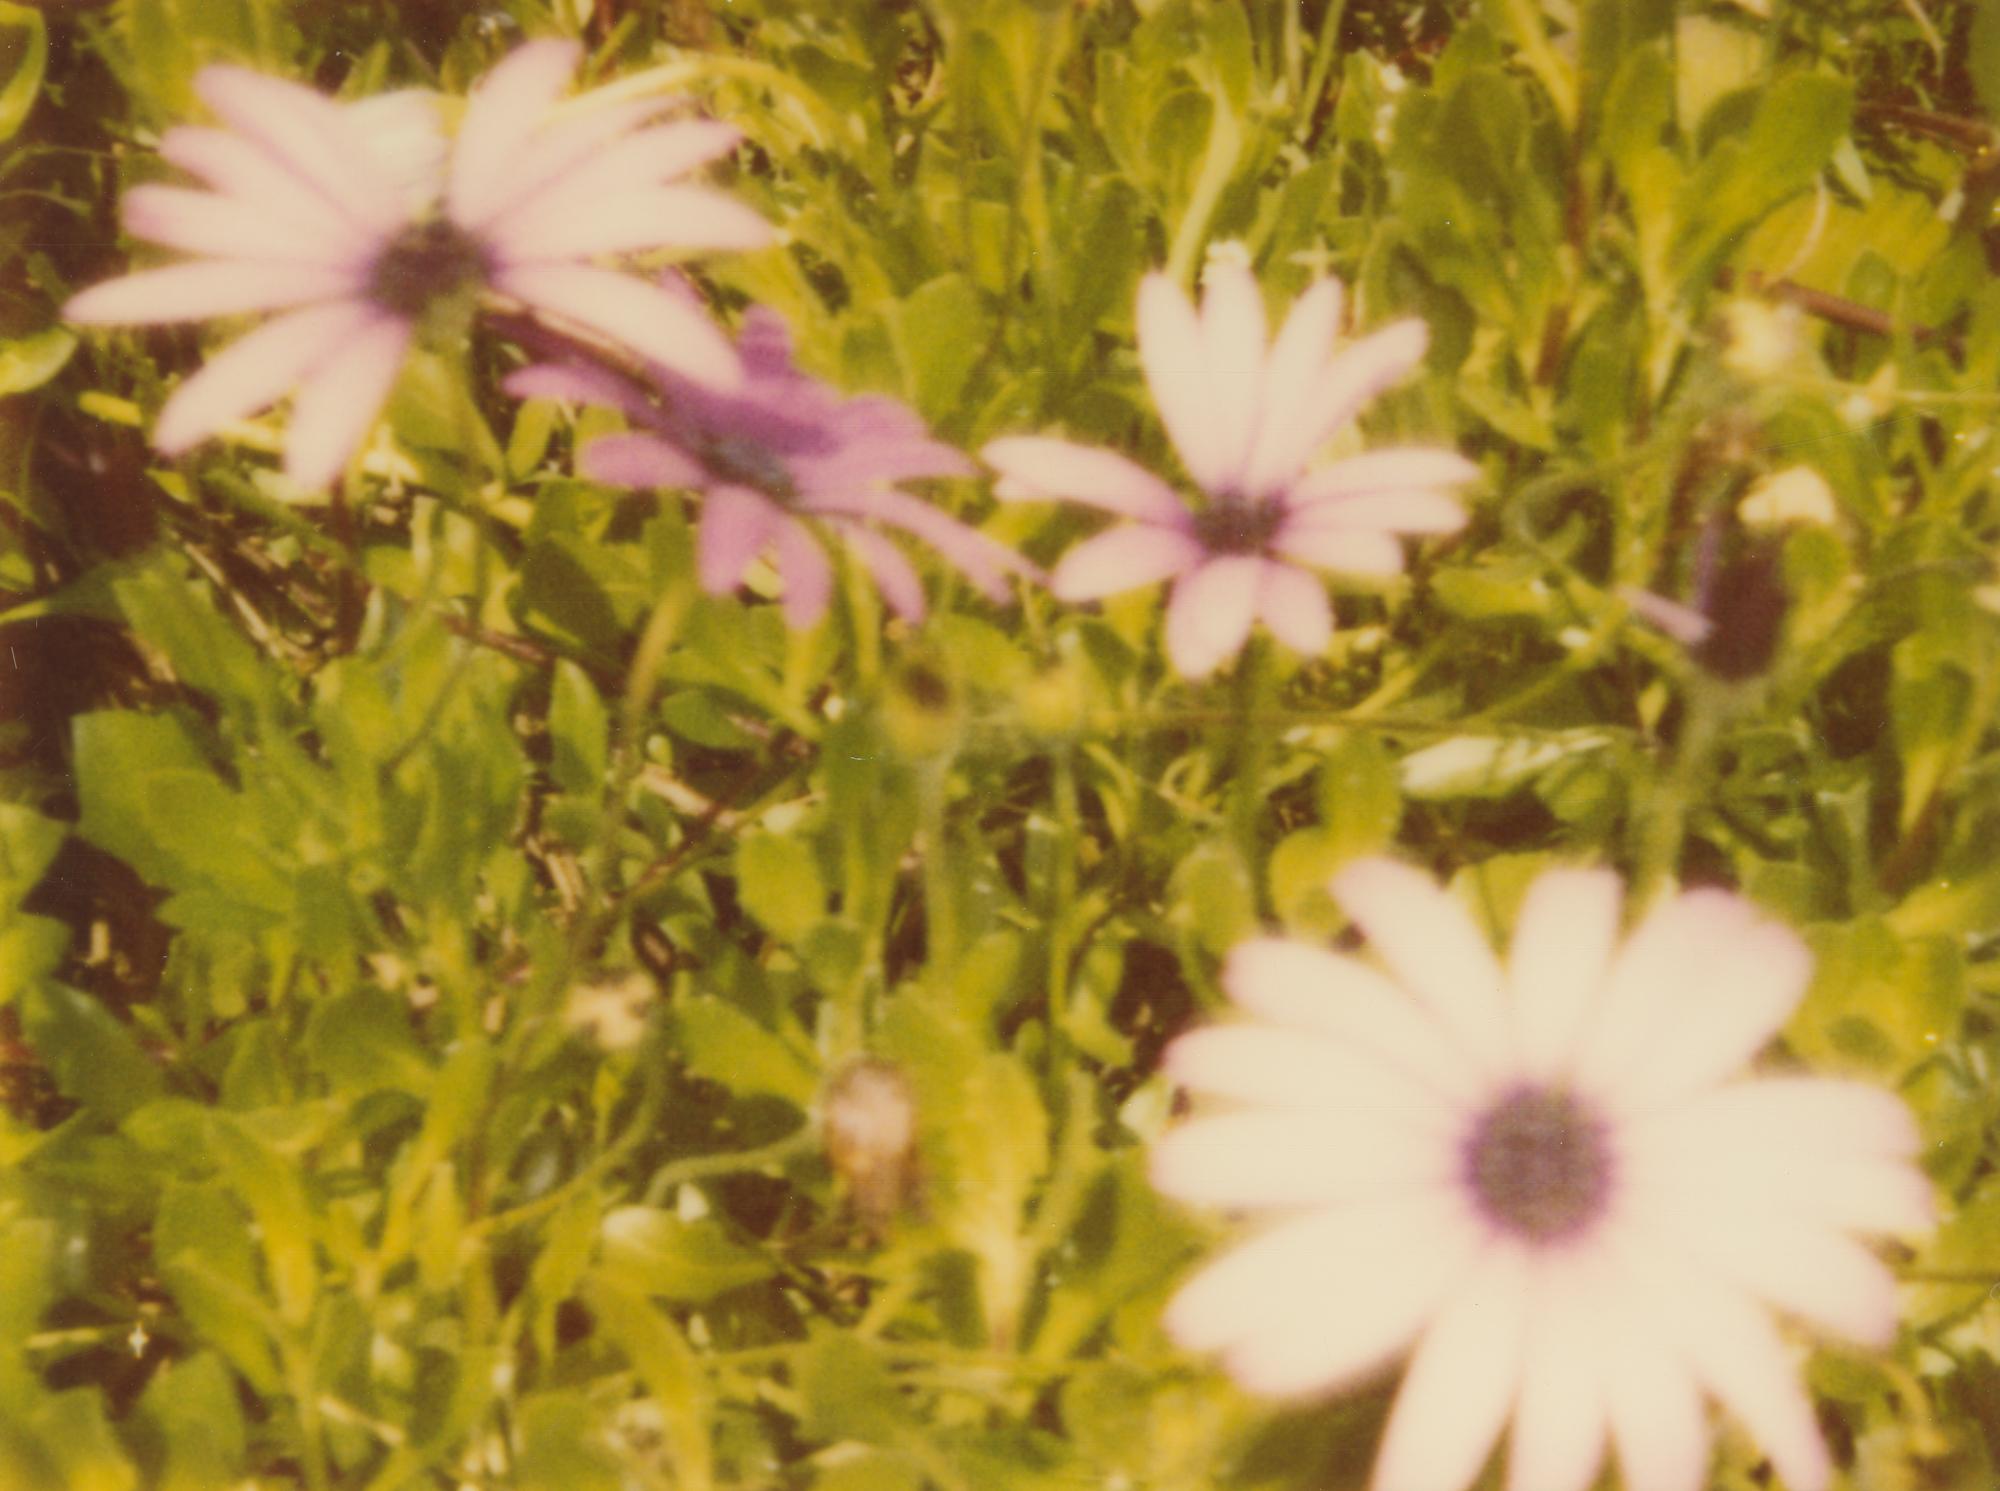 Artificial Flowers II - Zeitgenössisch, Landschaft, Polaroid, abgelaufen, 21. Jahrhundert